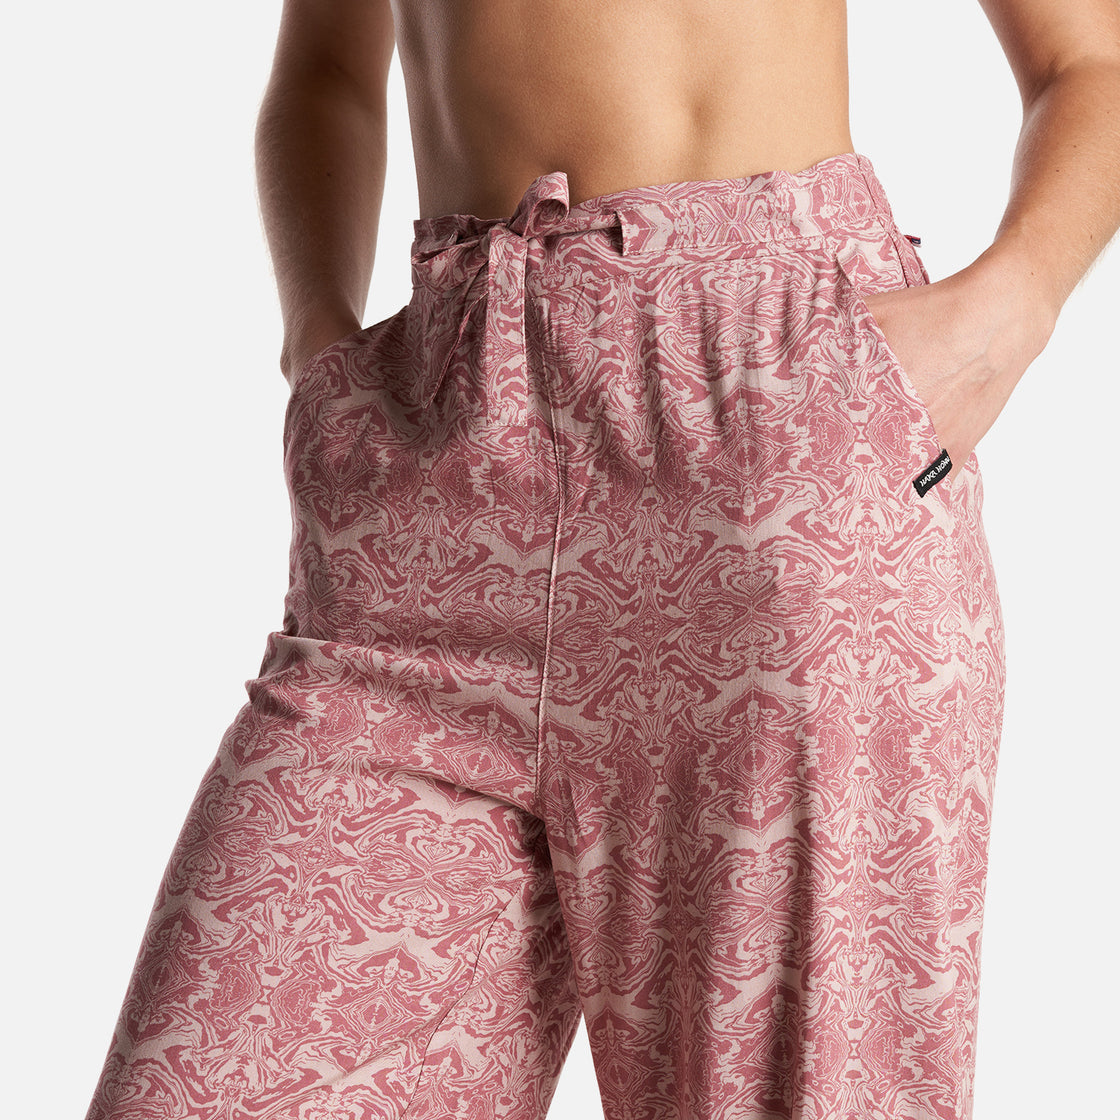 Pantalon Mujer Jipon Print Rosado Haka Honu